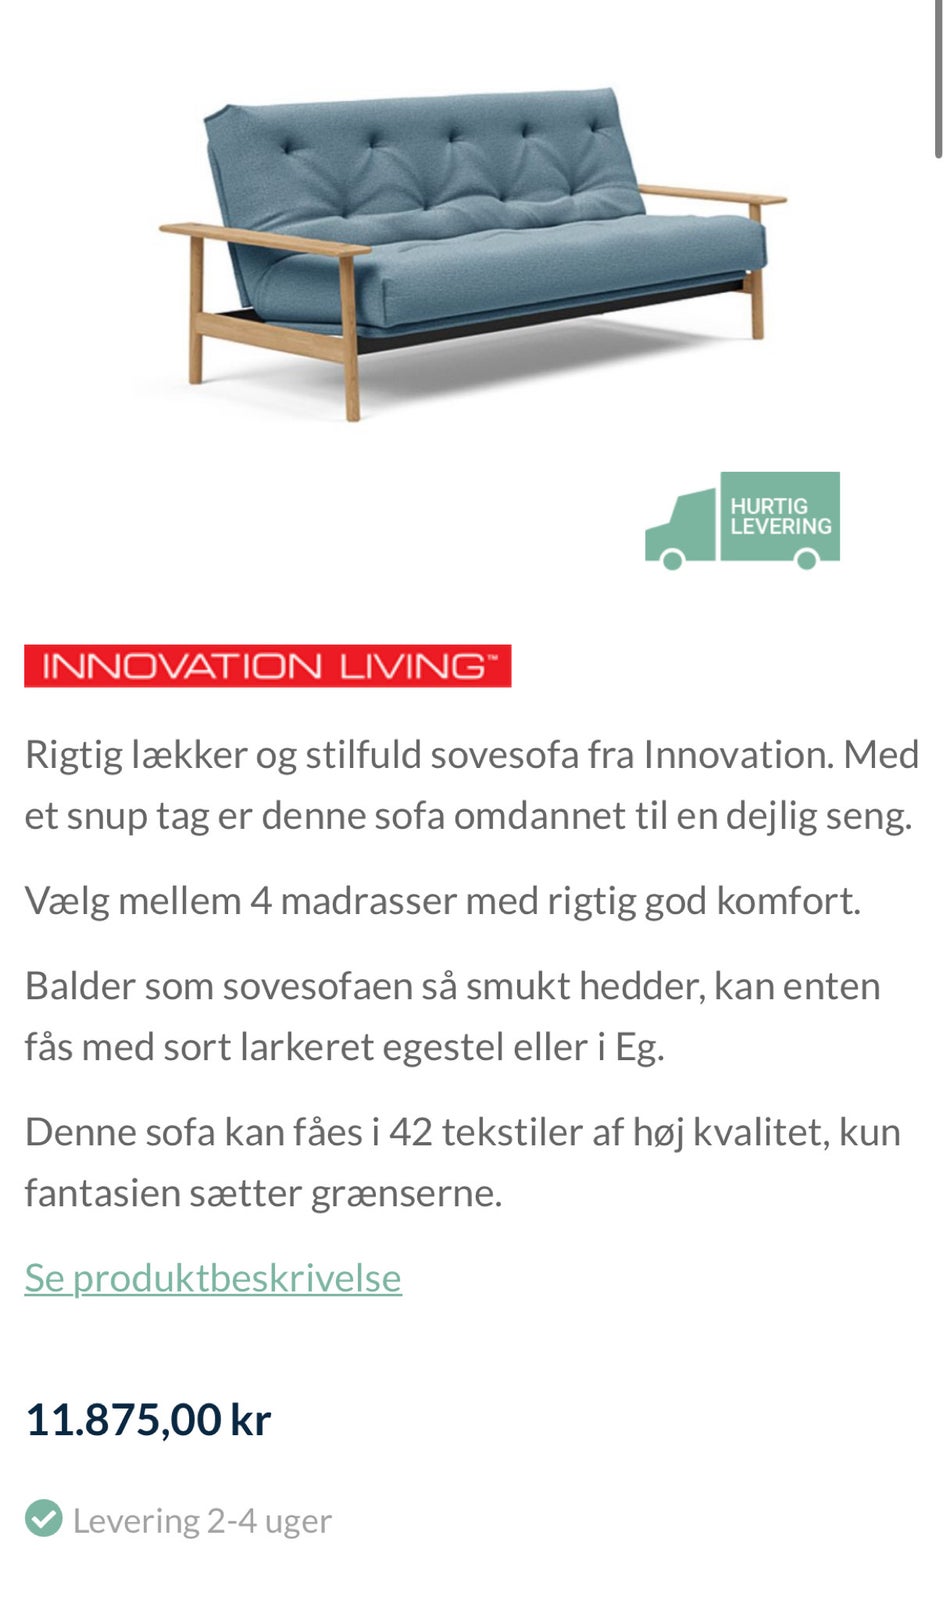 Sovesofa, Innovation Living